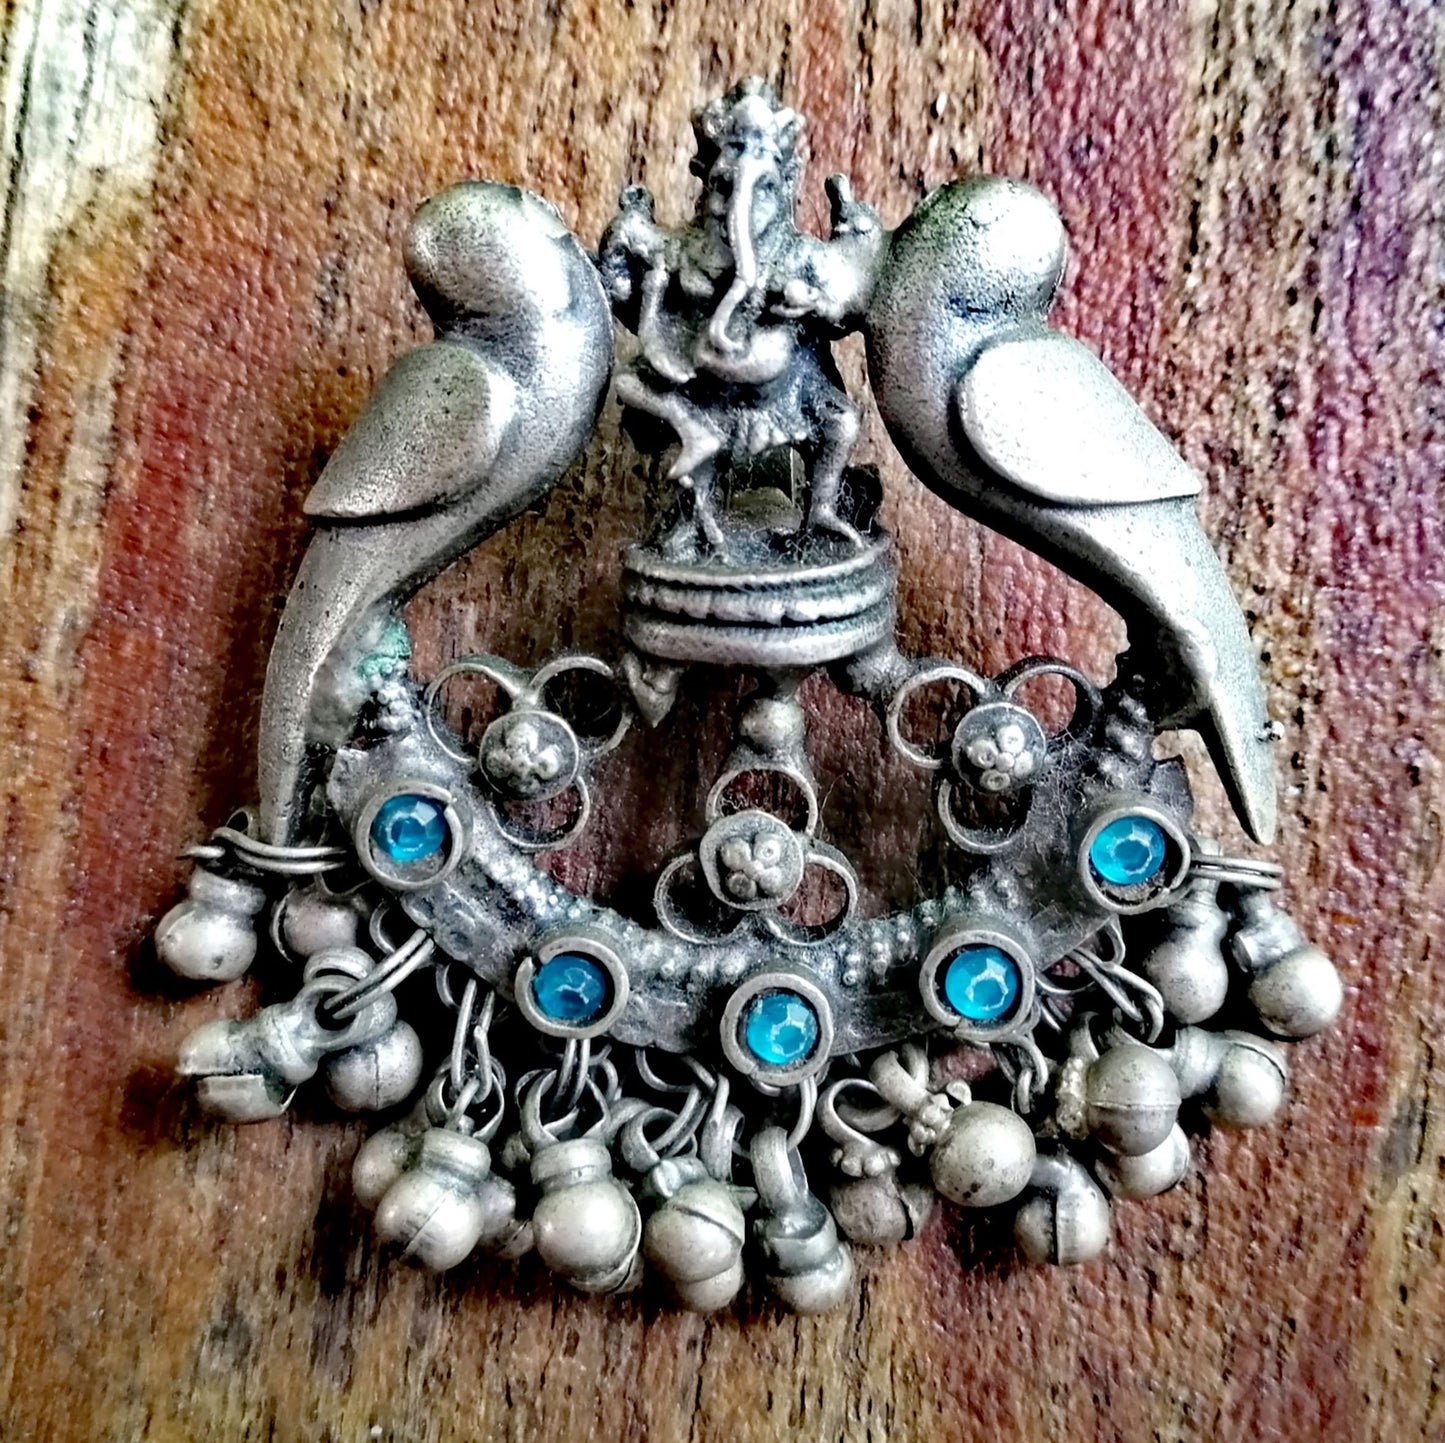 FANTASTISCHER Ganesha-Charm mit 2 Vögeln – Akzente aus himmelblauem Seeglas – Hindernisse überwinden | Neue Anfänge